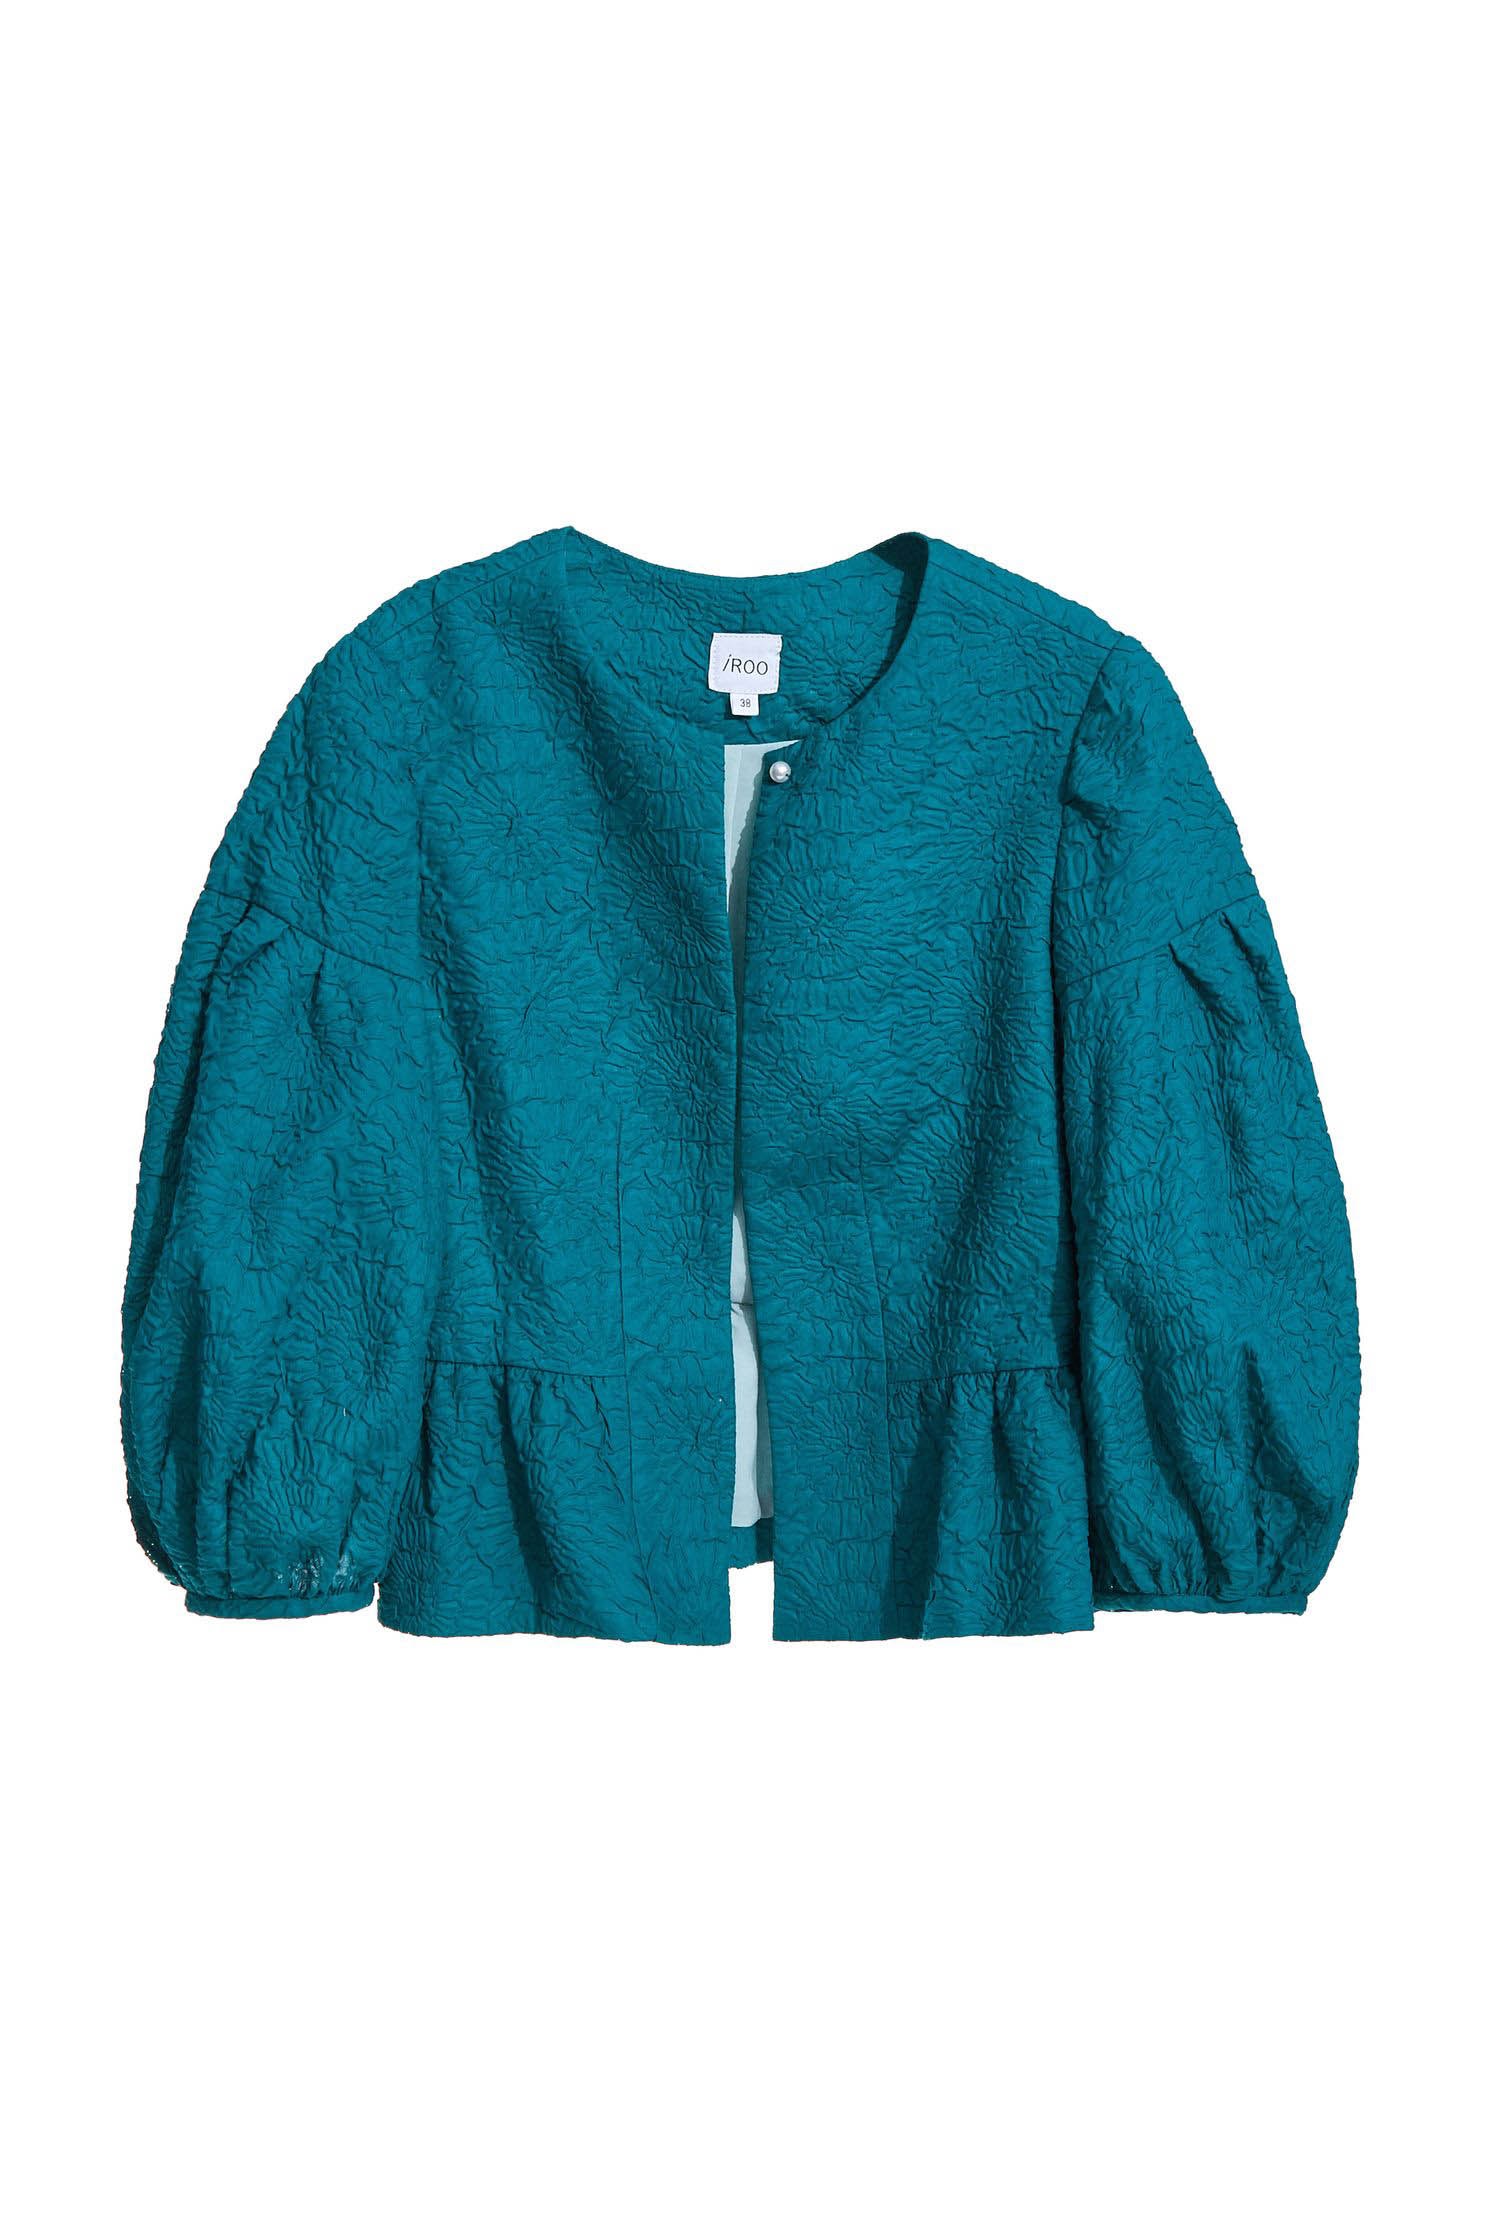 Bubble patterned cropped jacket,Jackets,Outerwear,Season (SS) Look